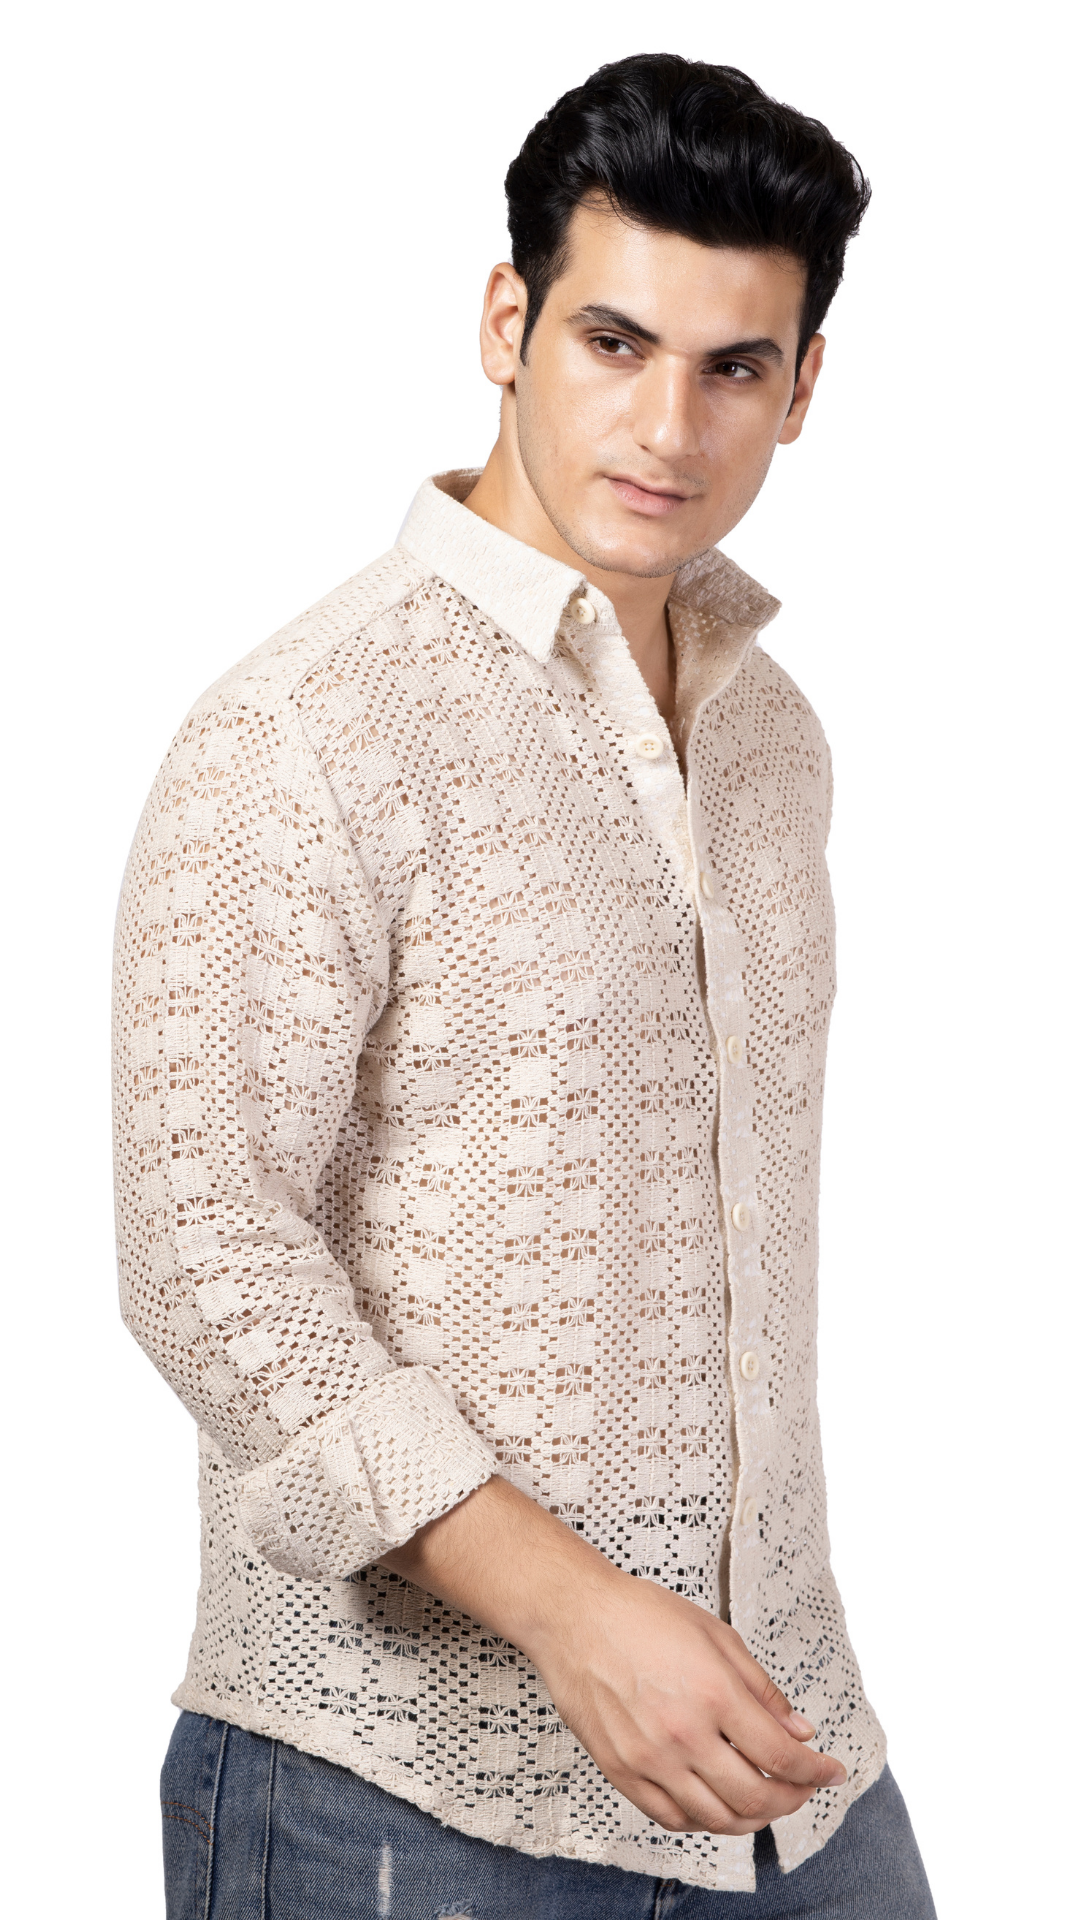 White Box Pattern Knitted Crochet Shirt Full Sleeves